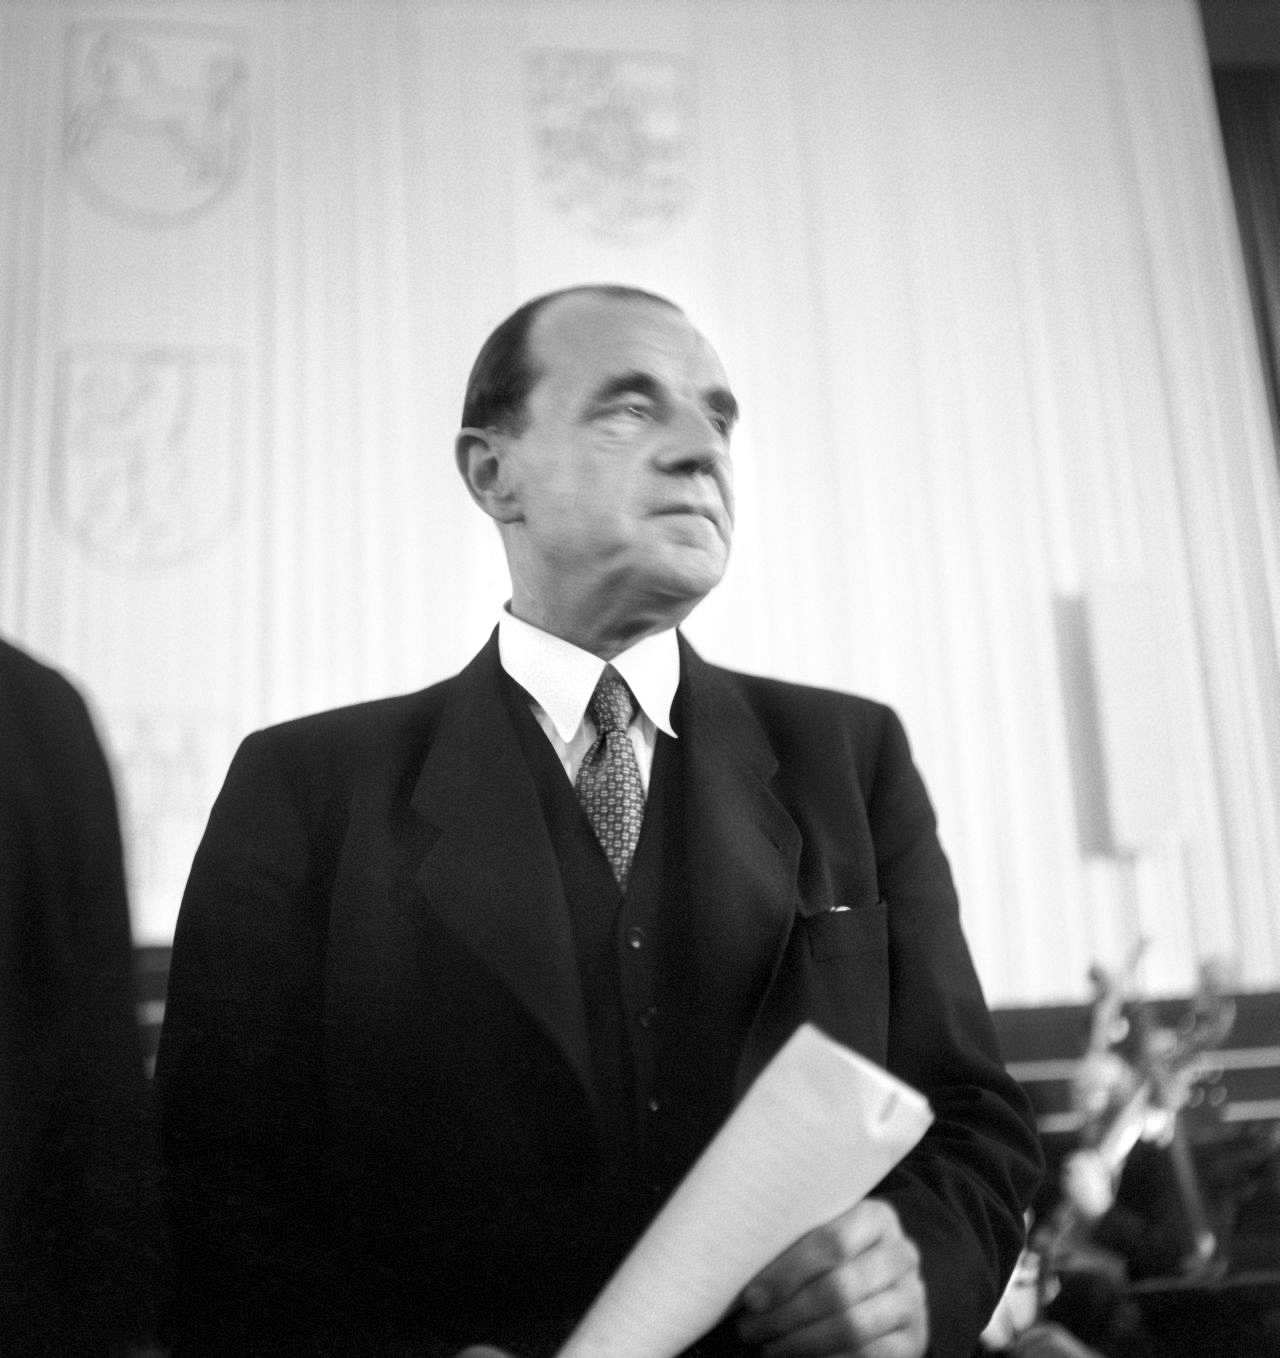 Fotografie von Erich Köhler, dem ersten Bundestagspräsidenten auf der konstituierende Sitzung des ersten Bundestages, 1949.